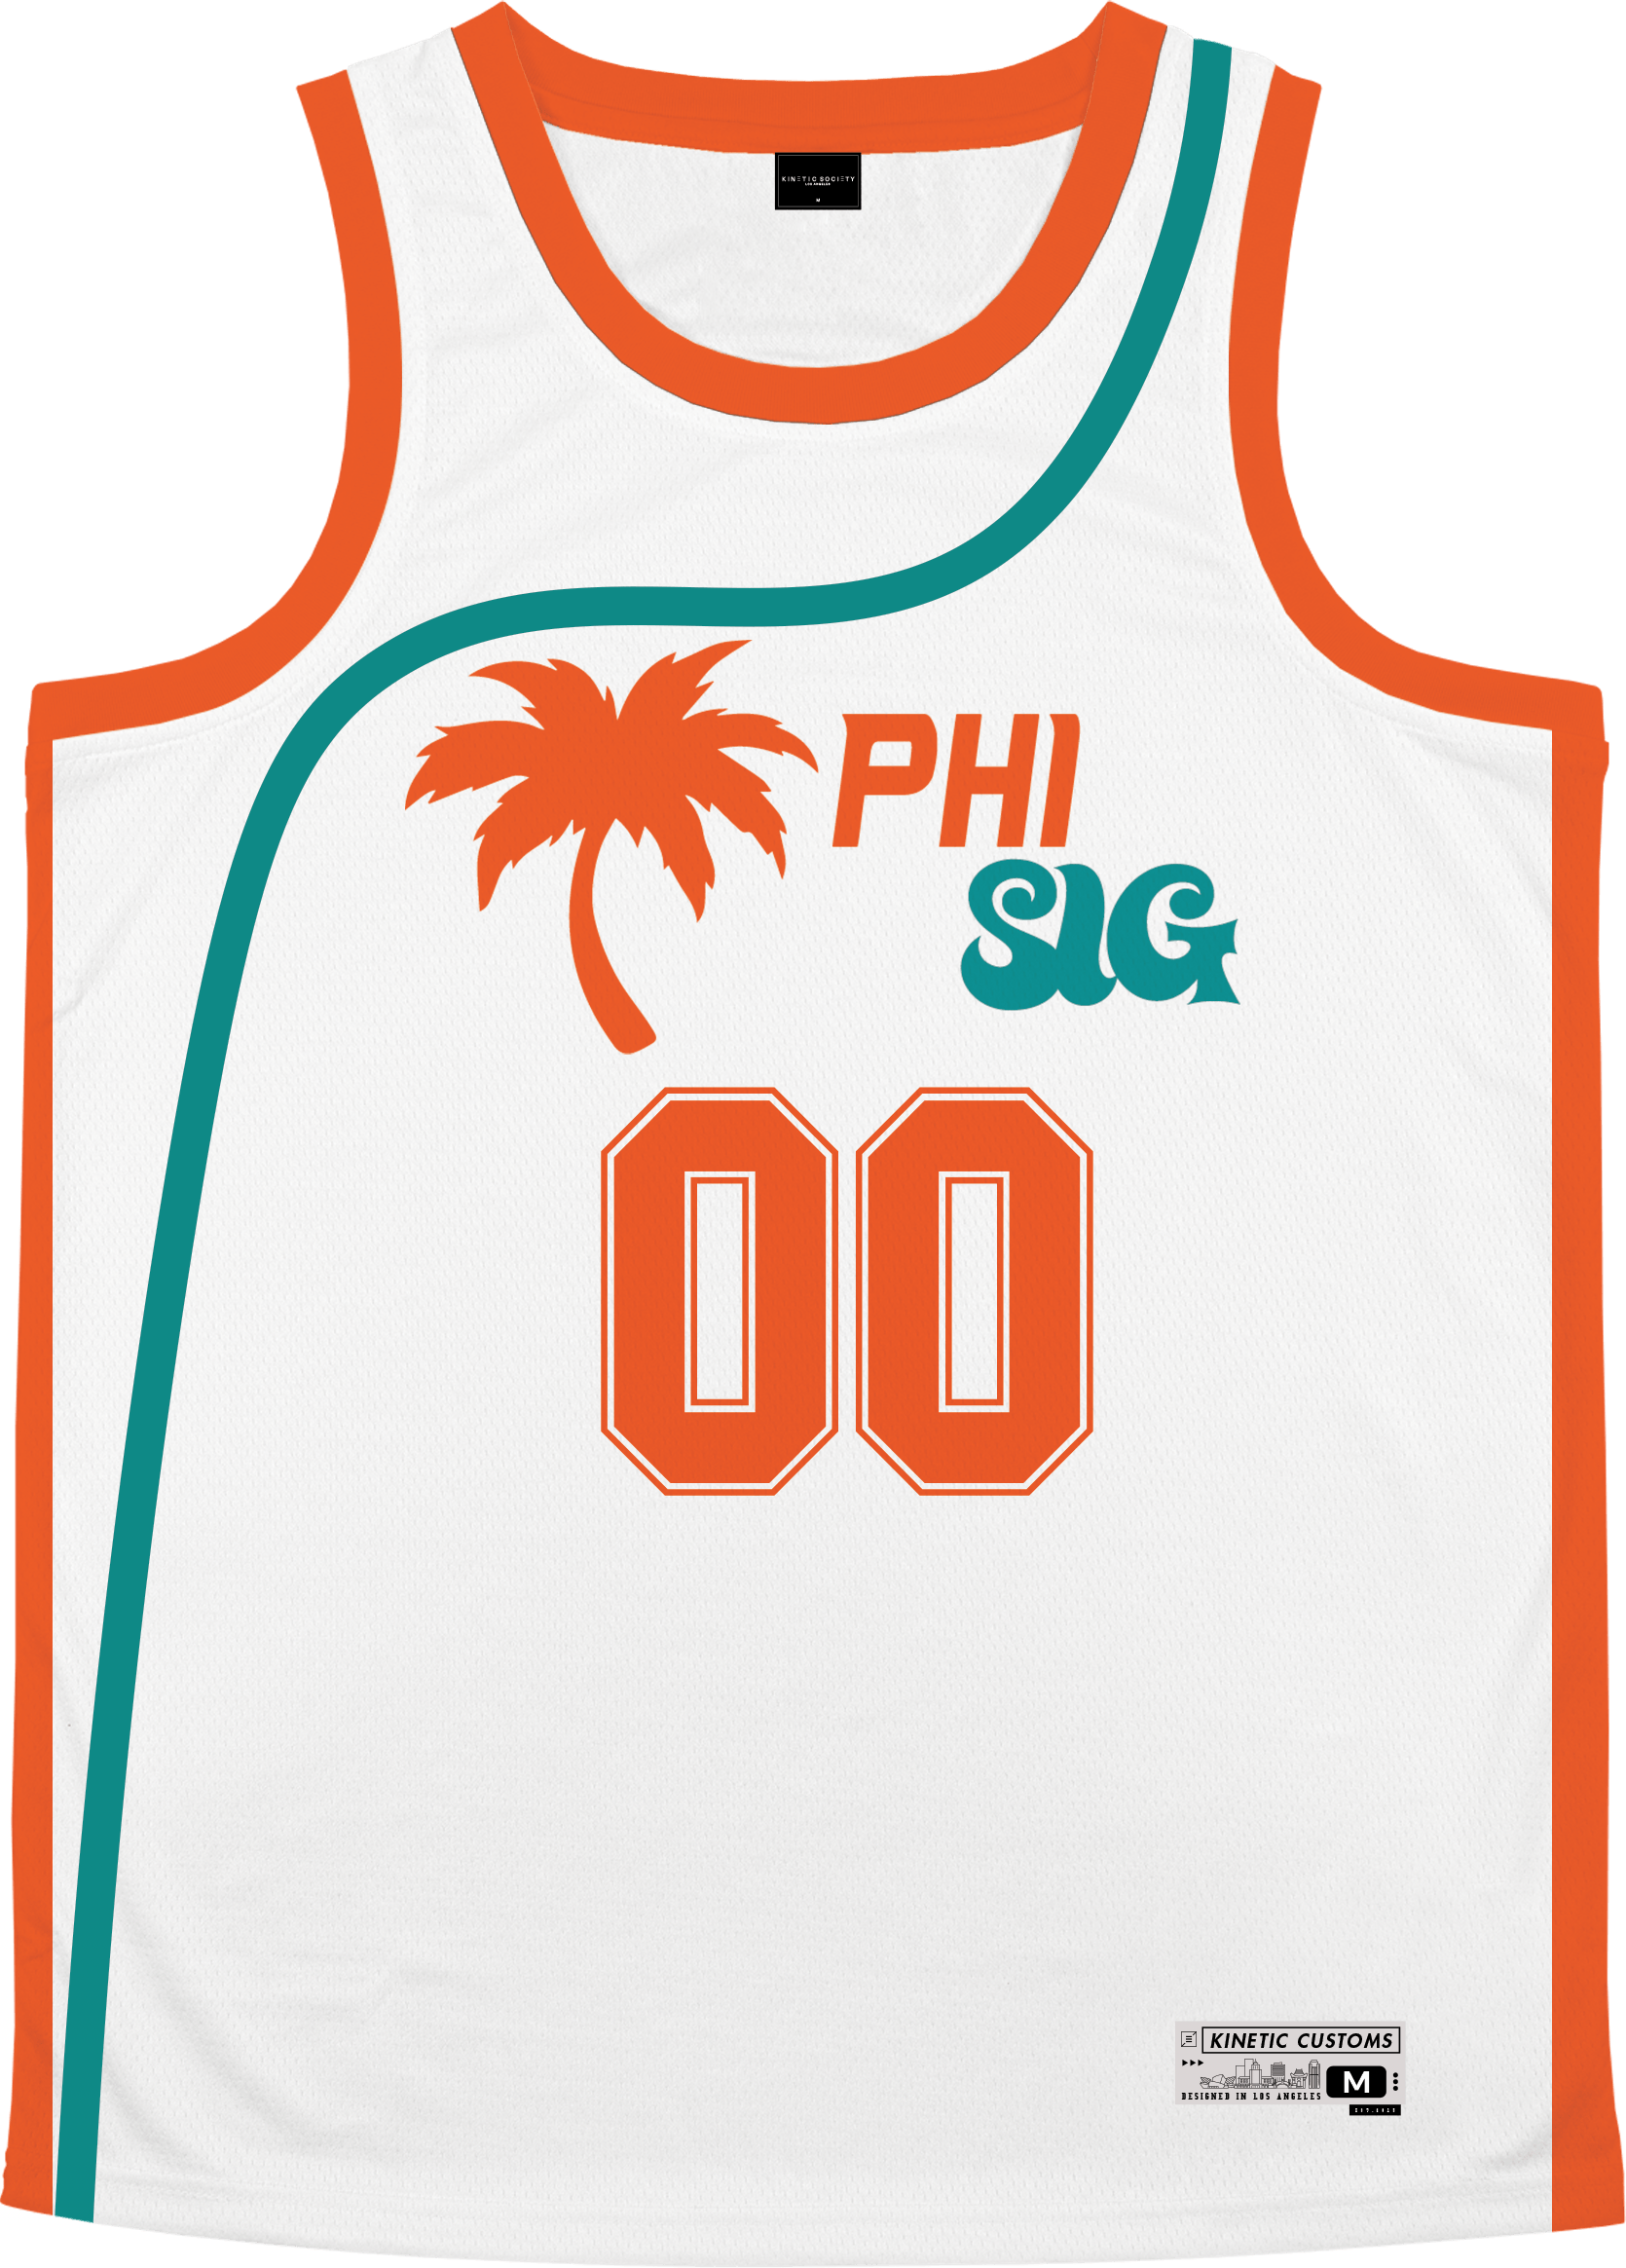 Phi Sigma Kappa - Tropical Basketball Jersey Premium Basketball Kinetic Society LLC 